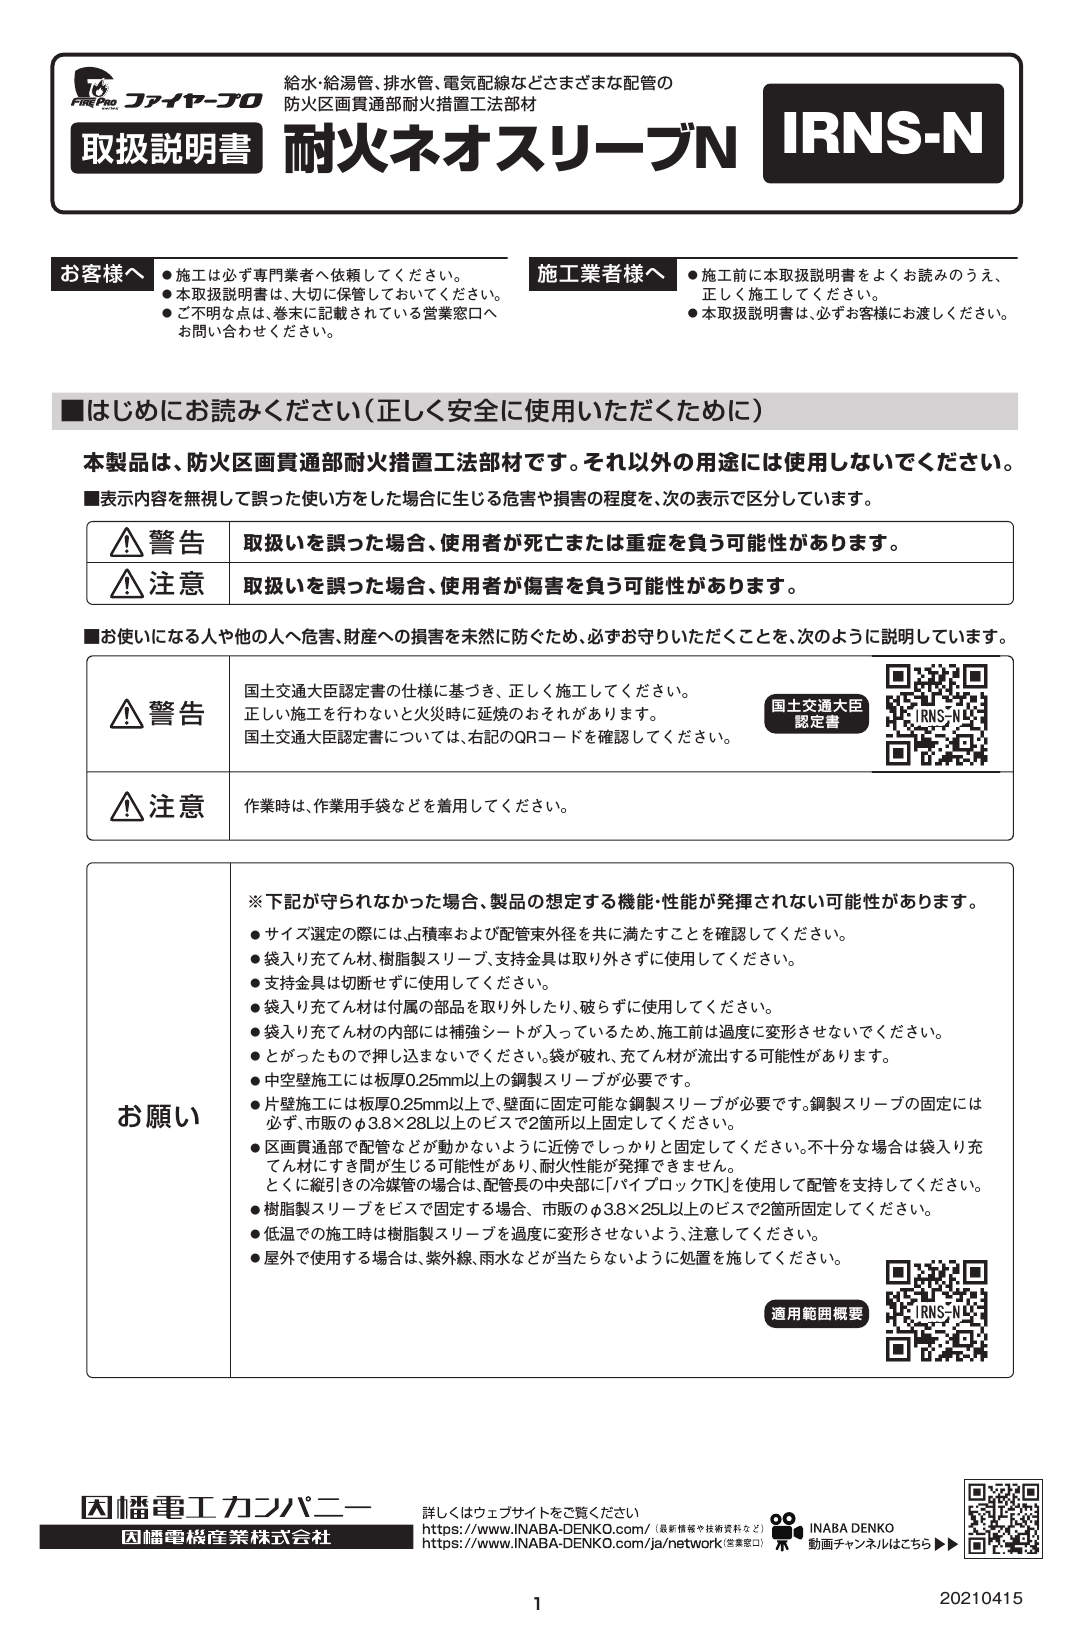 IRNS-N_取扱説明書_20210415-00w.pdf